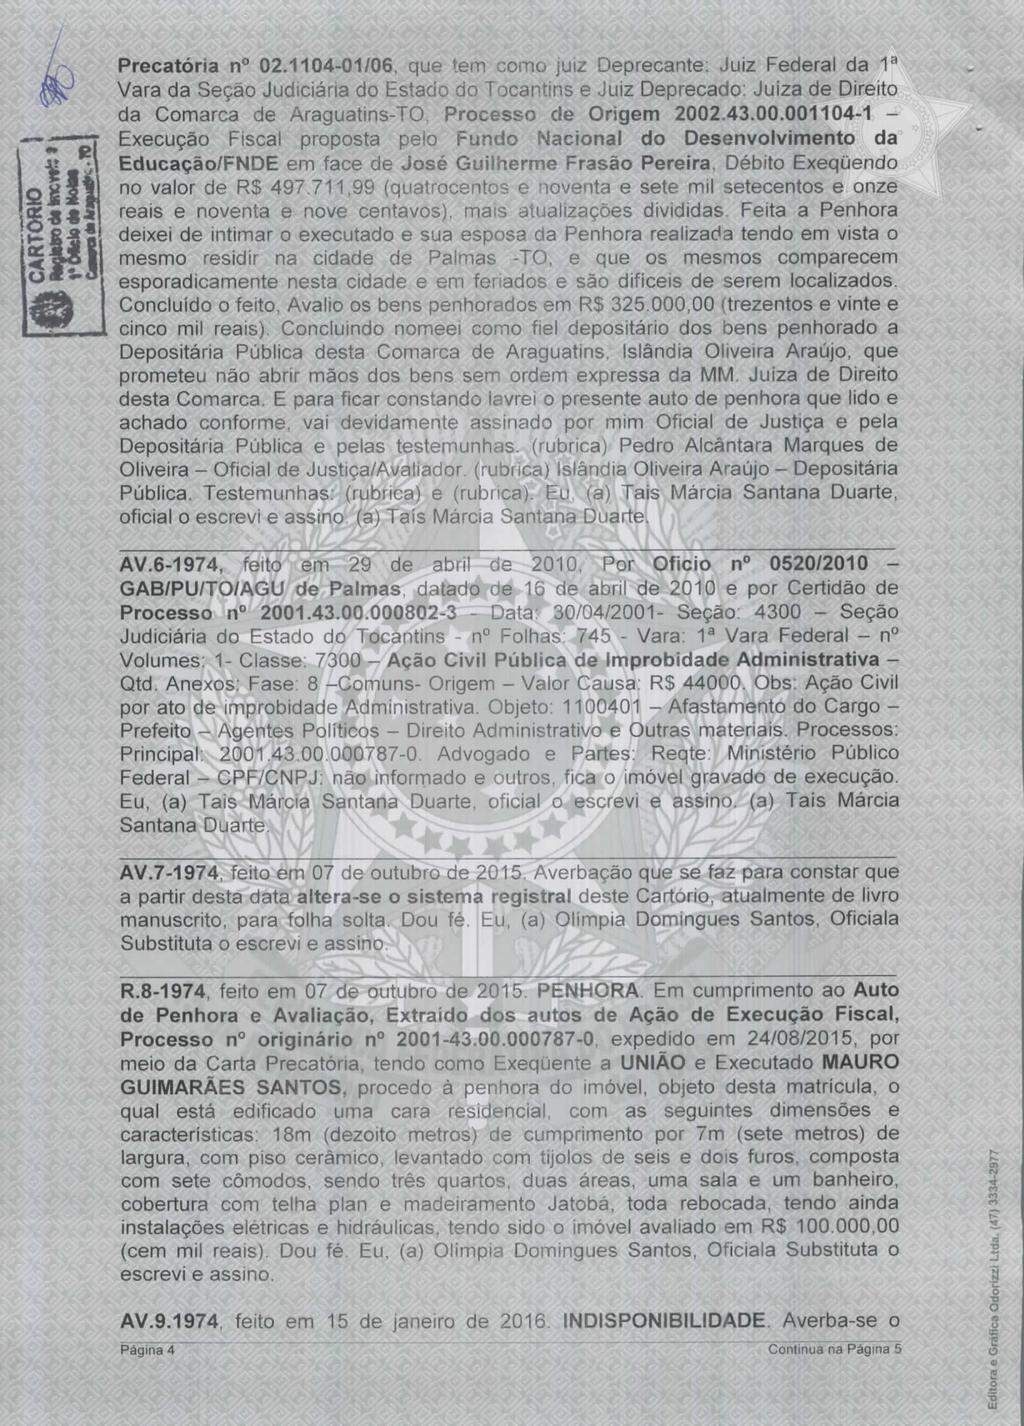 Precatória n 02.1104-01/06, que tem como juiz Deprecante: Juiz Federal da 1a Vara da Seção Judiciária do Estado do Tocantins e Juiz Deprecado: Juíza de Direito da Comarca de Araguatins-TO.